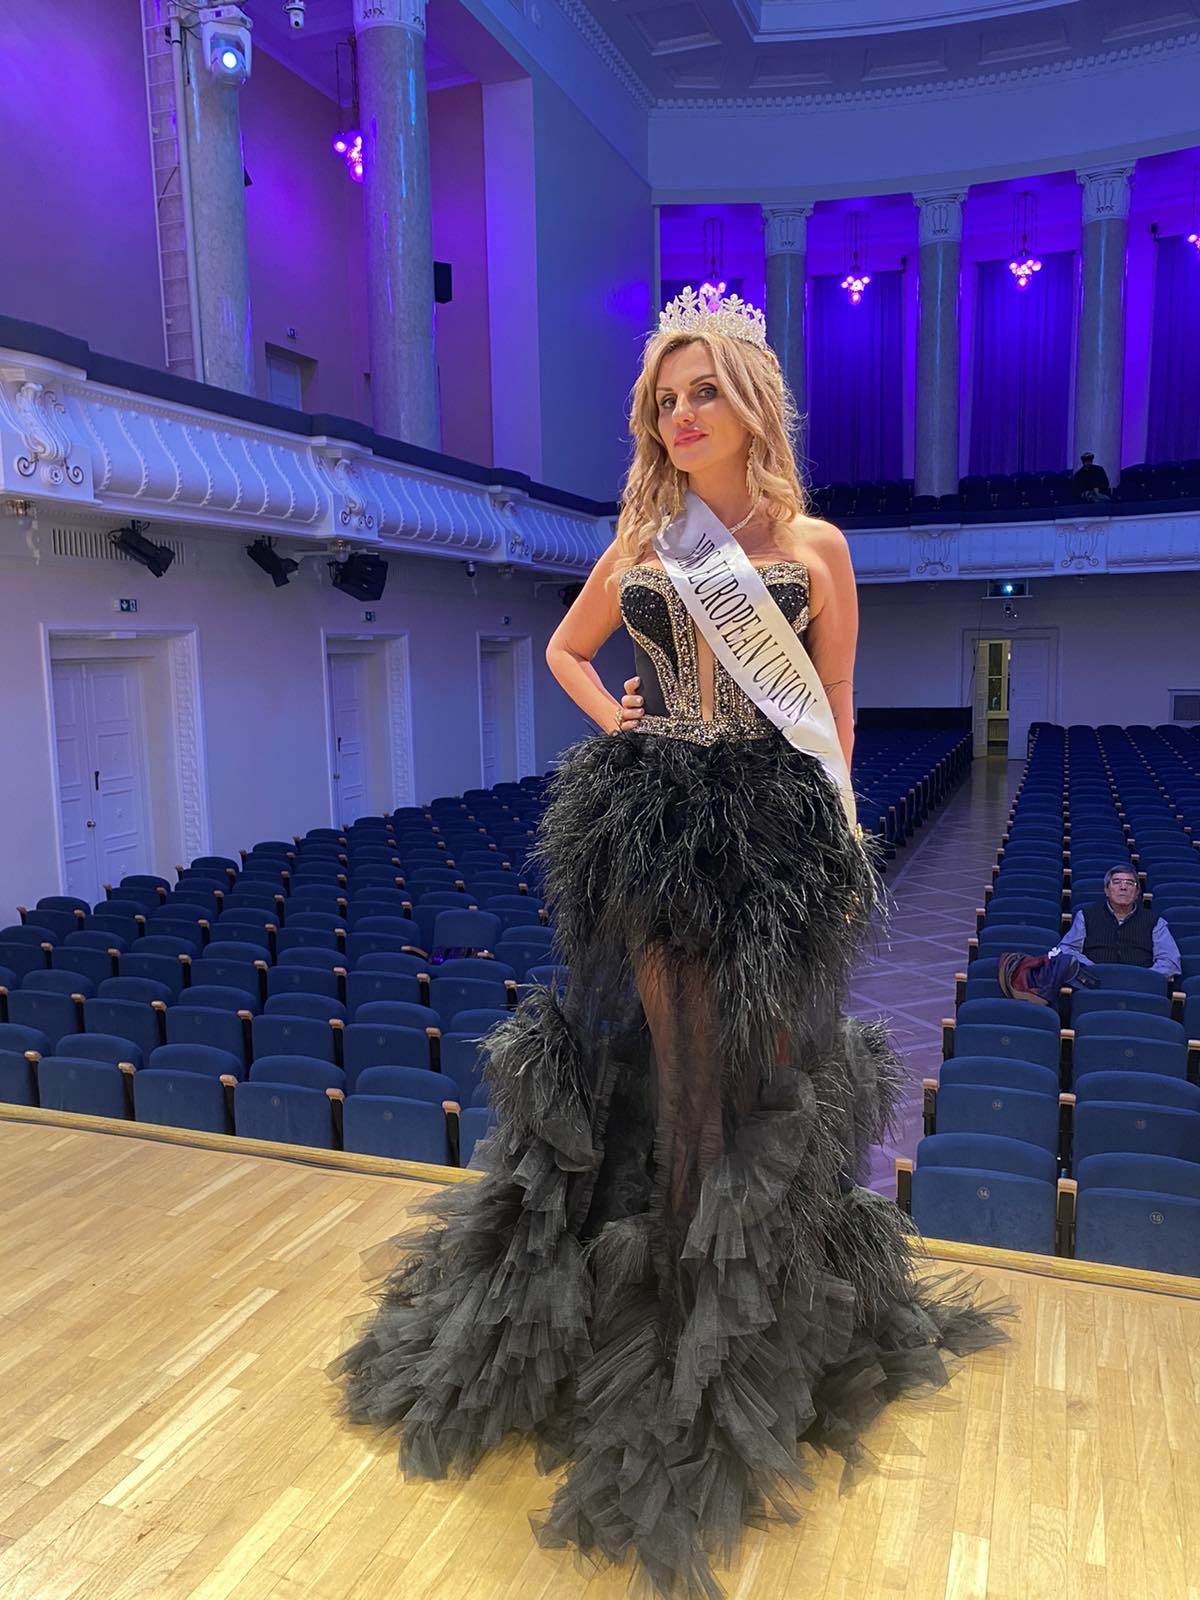 Като носителка на титлата „“Мисис България 2020”, бизнес дамата Мариета